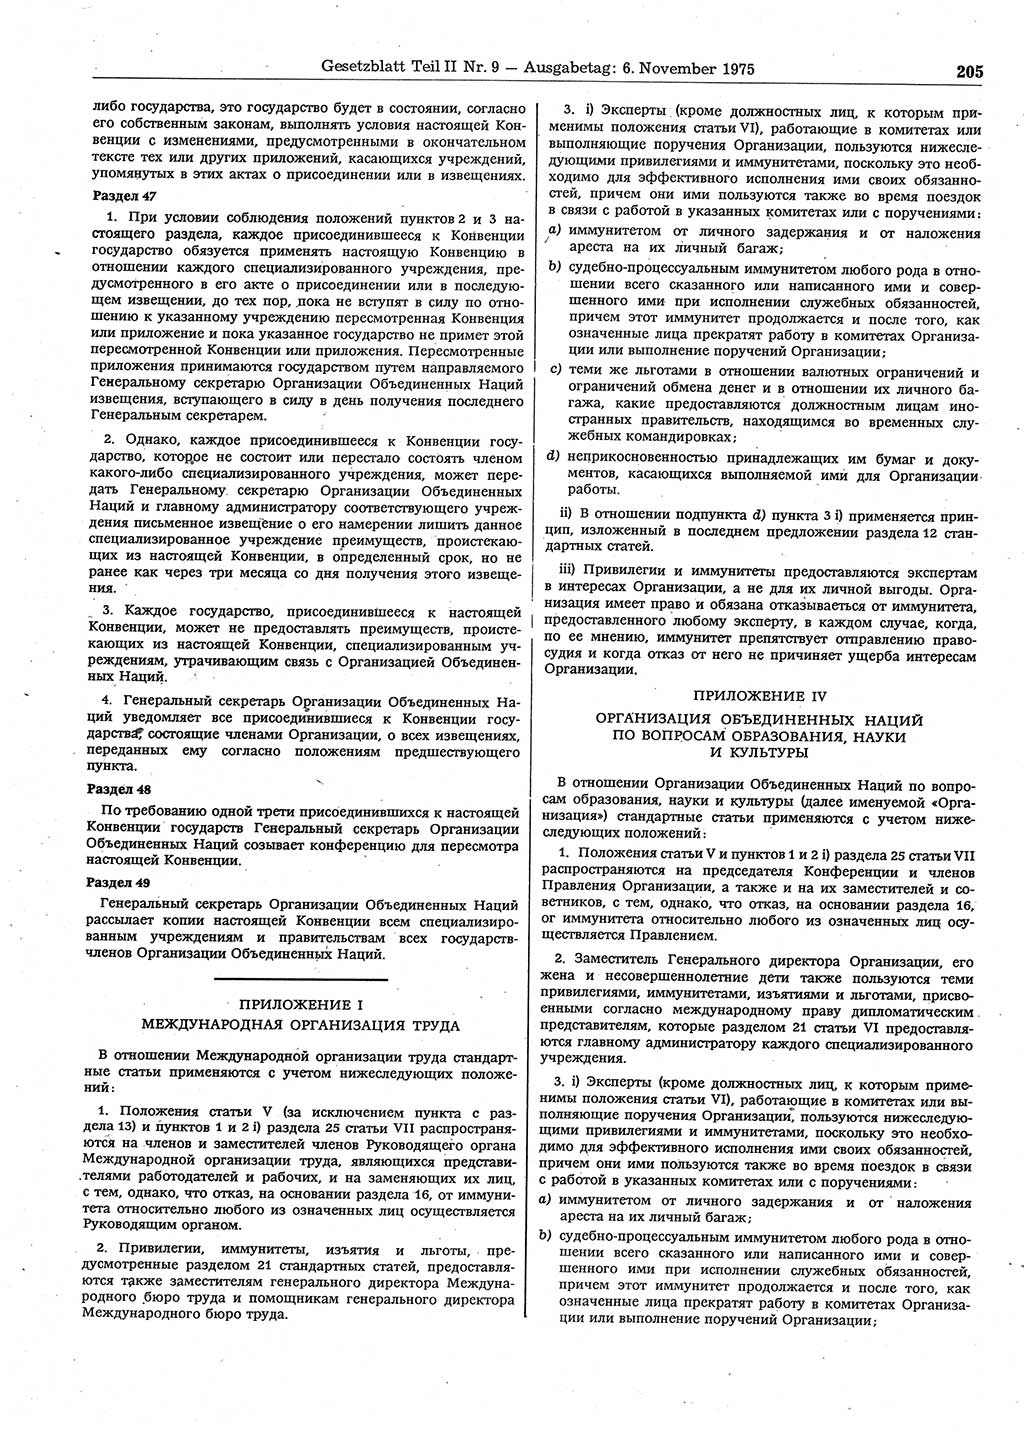 Gesetzblatt (GBl.) der Deutschen Demokratischen Republik (DDR) Teil ⅠⅠ 1975, Seite 205 (GBl. DDR ⅠⅠ 1975, S. 205)